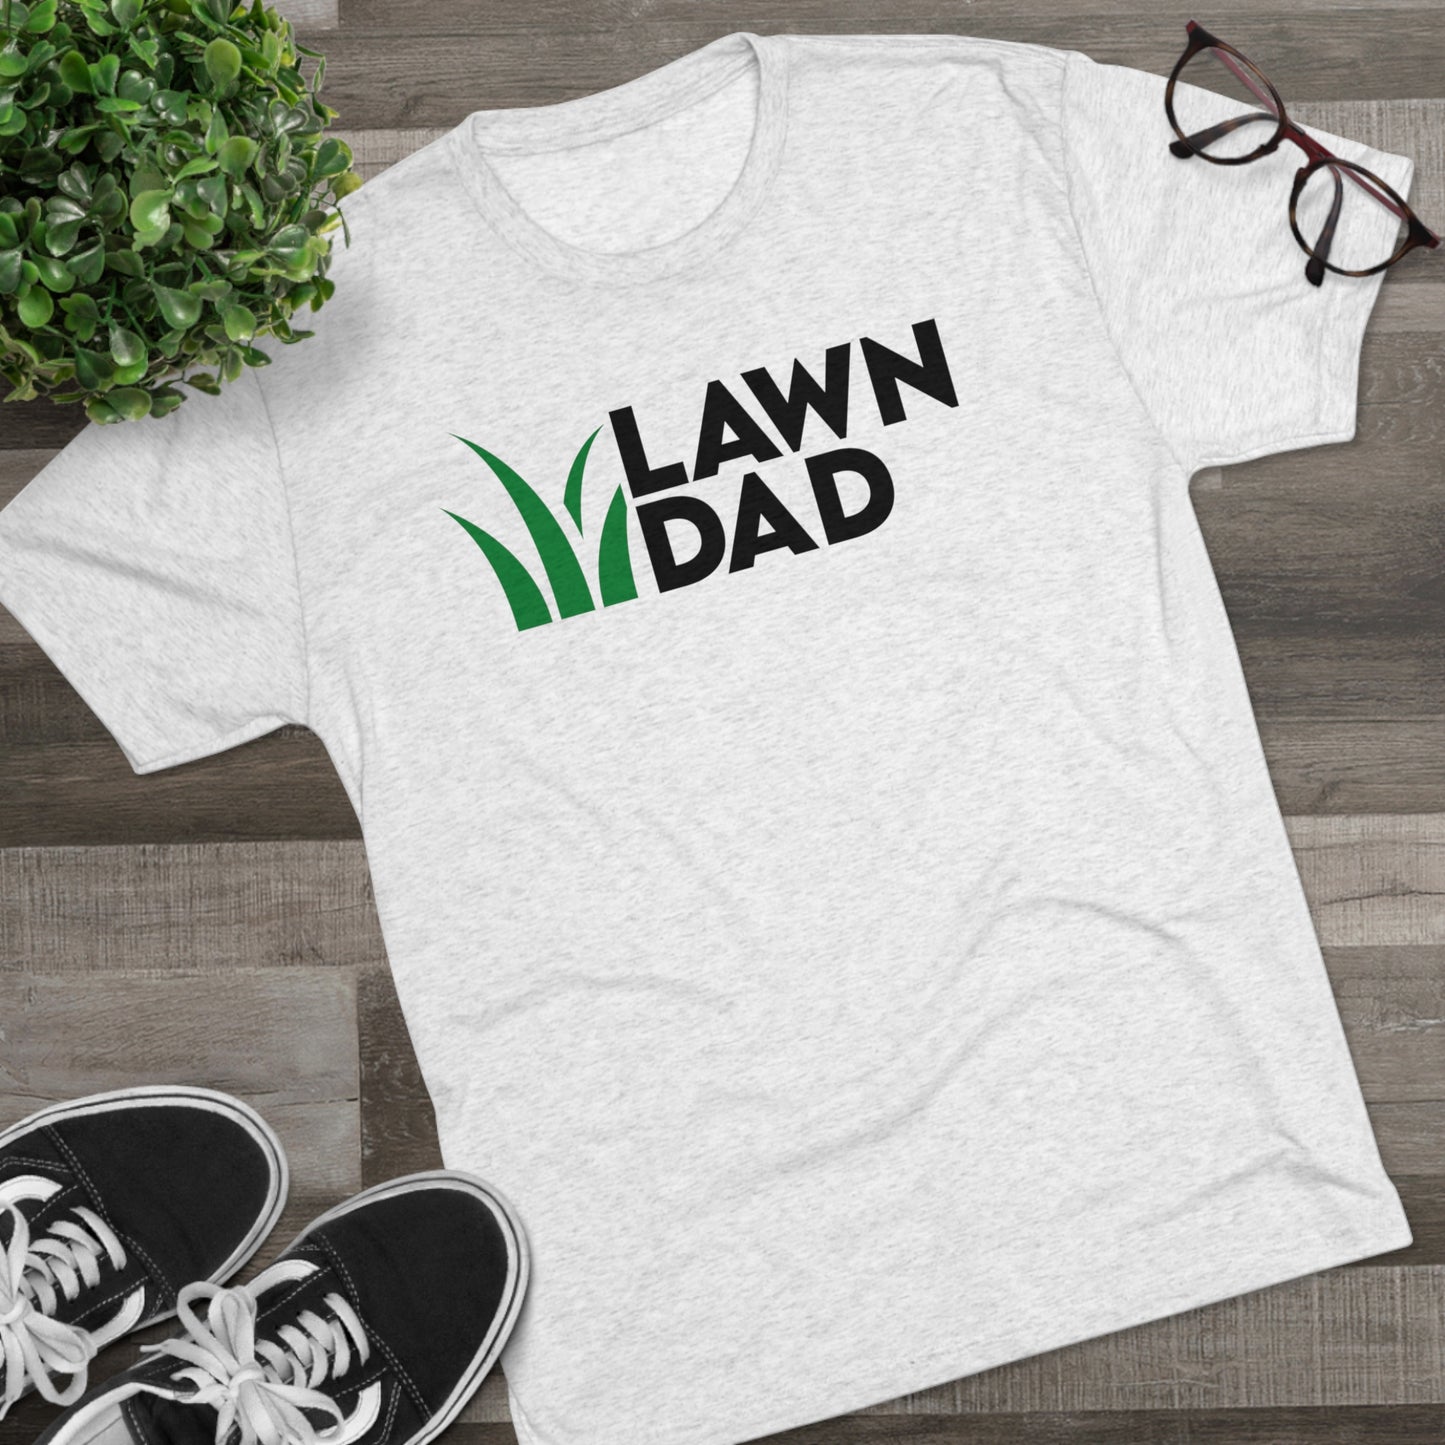 Lawn Dad Shirt